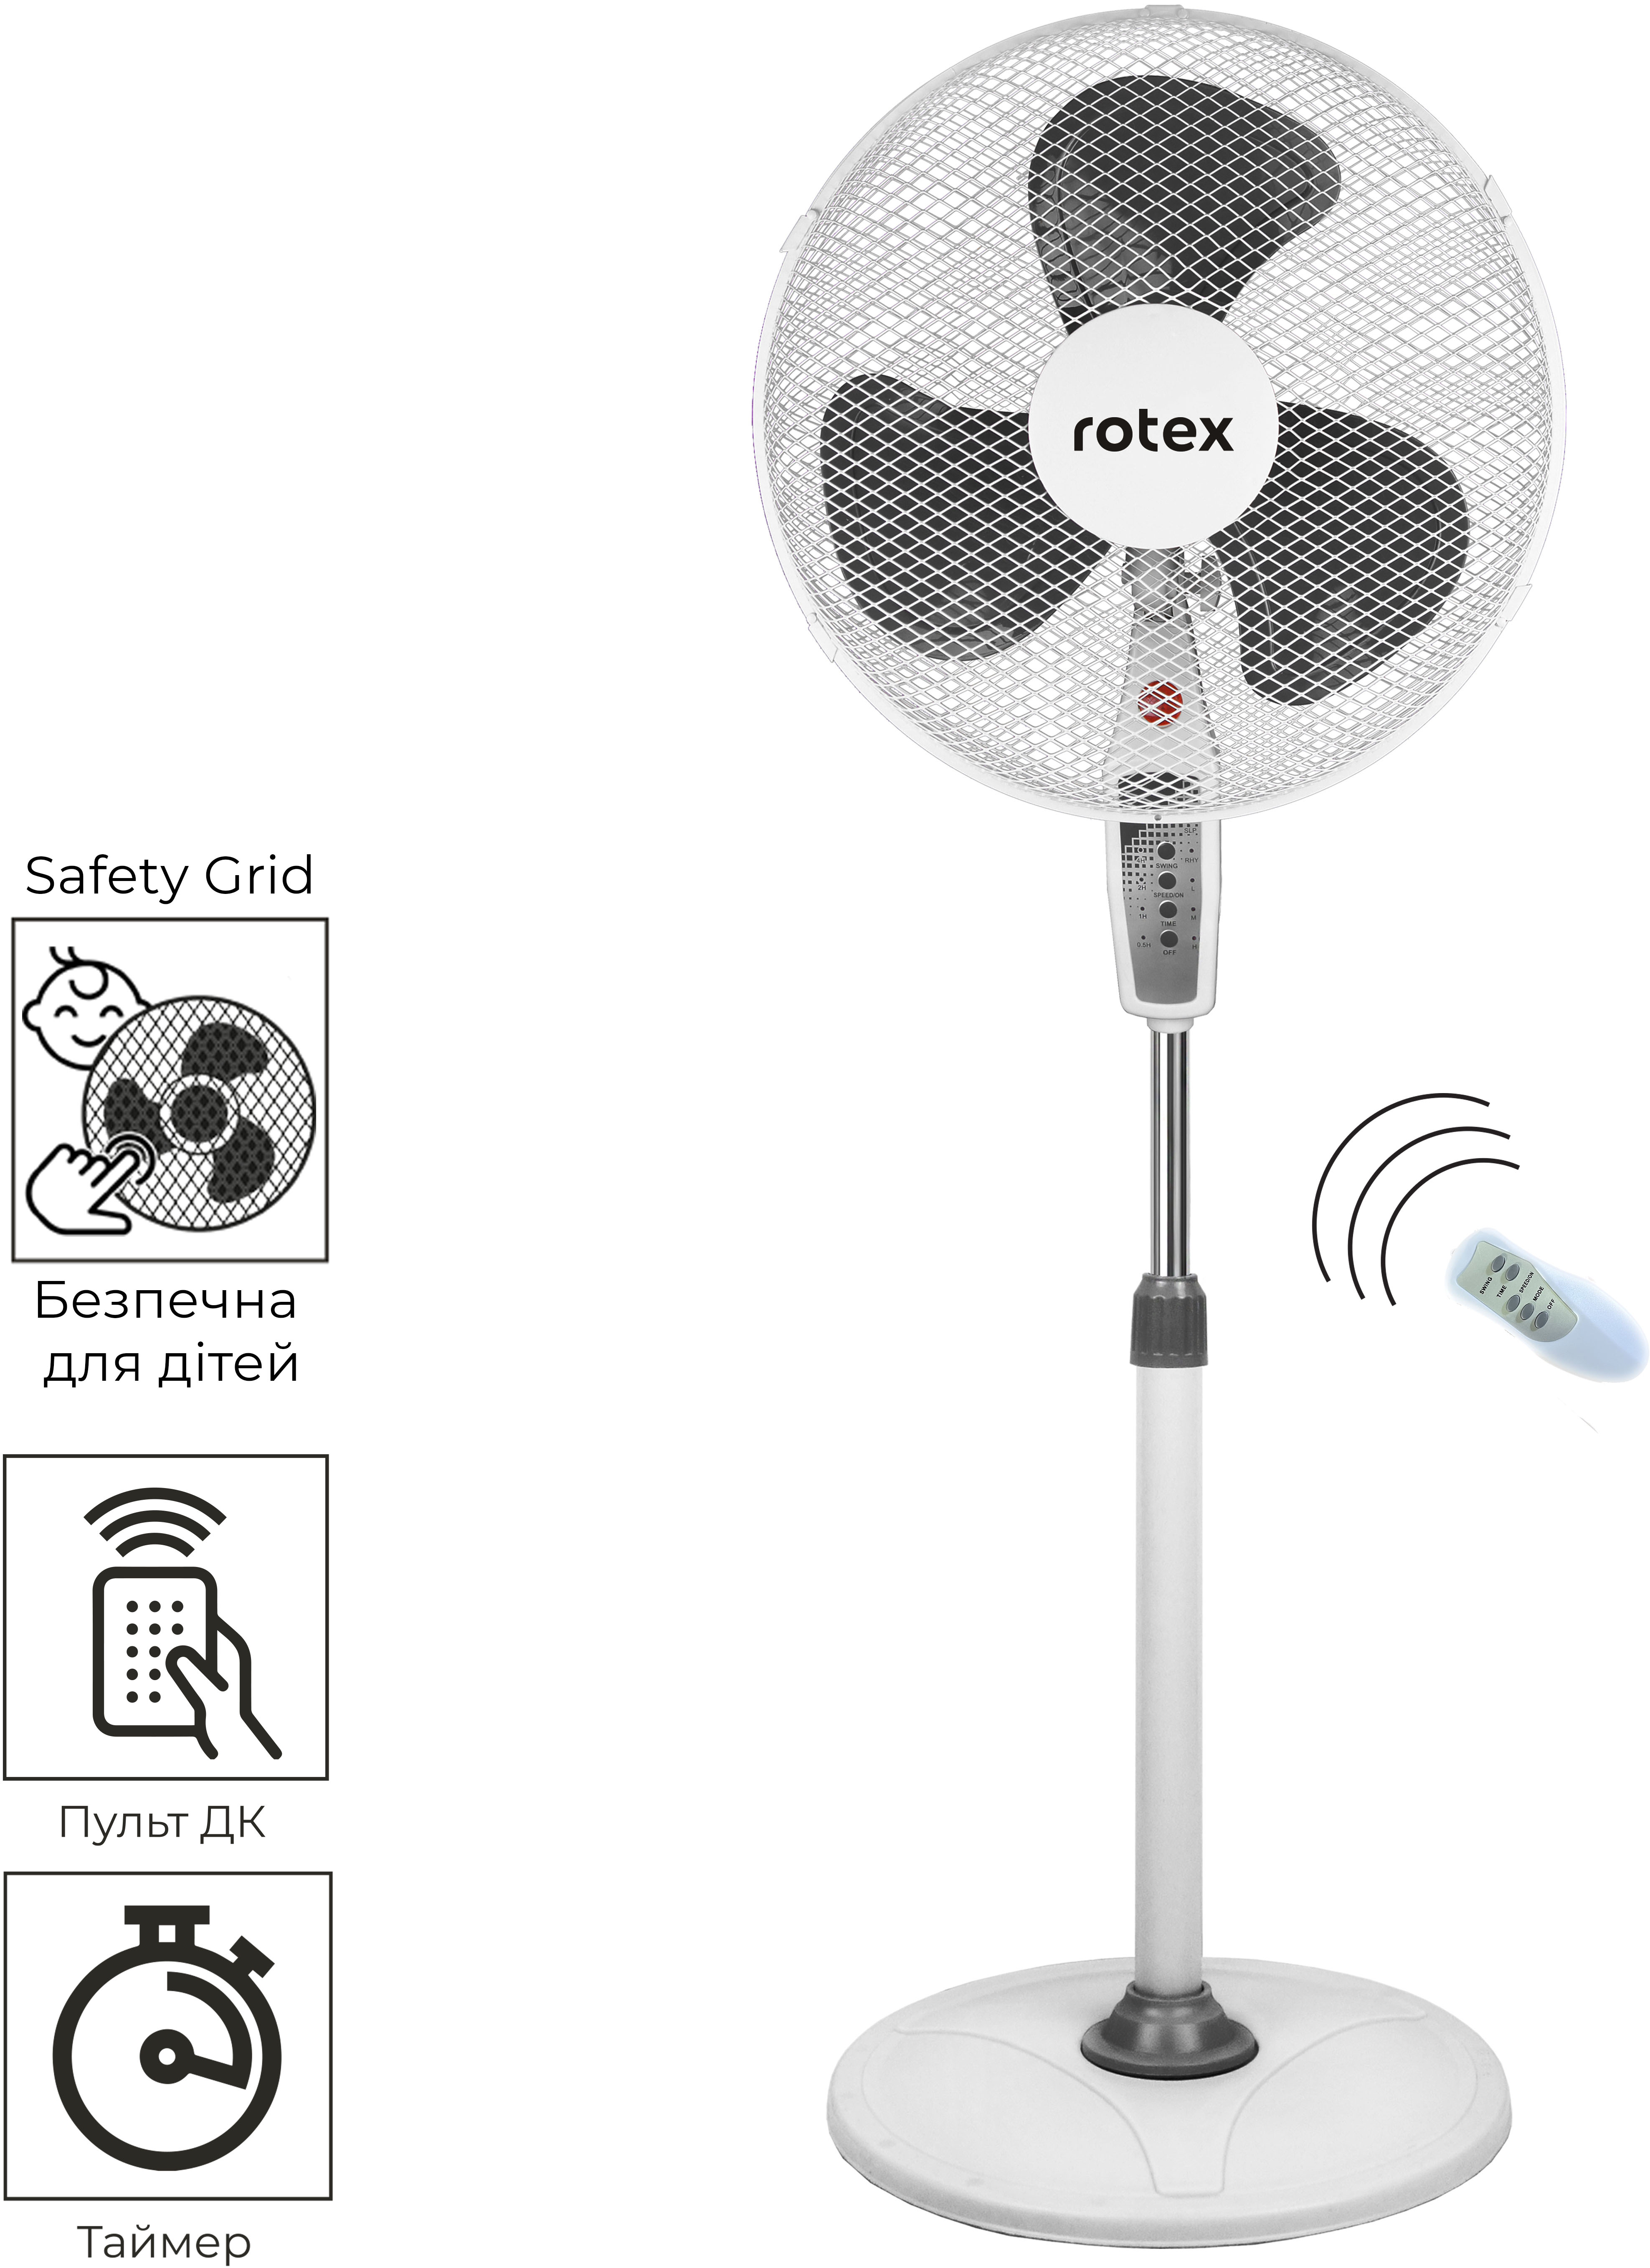 Напольный вентилятор Rotex RAF66-E в интернет-магазине, главное фото